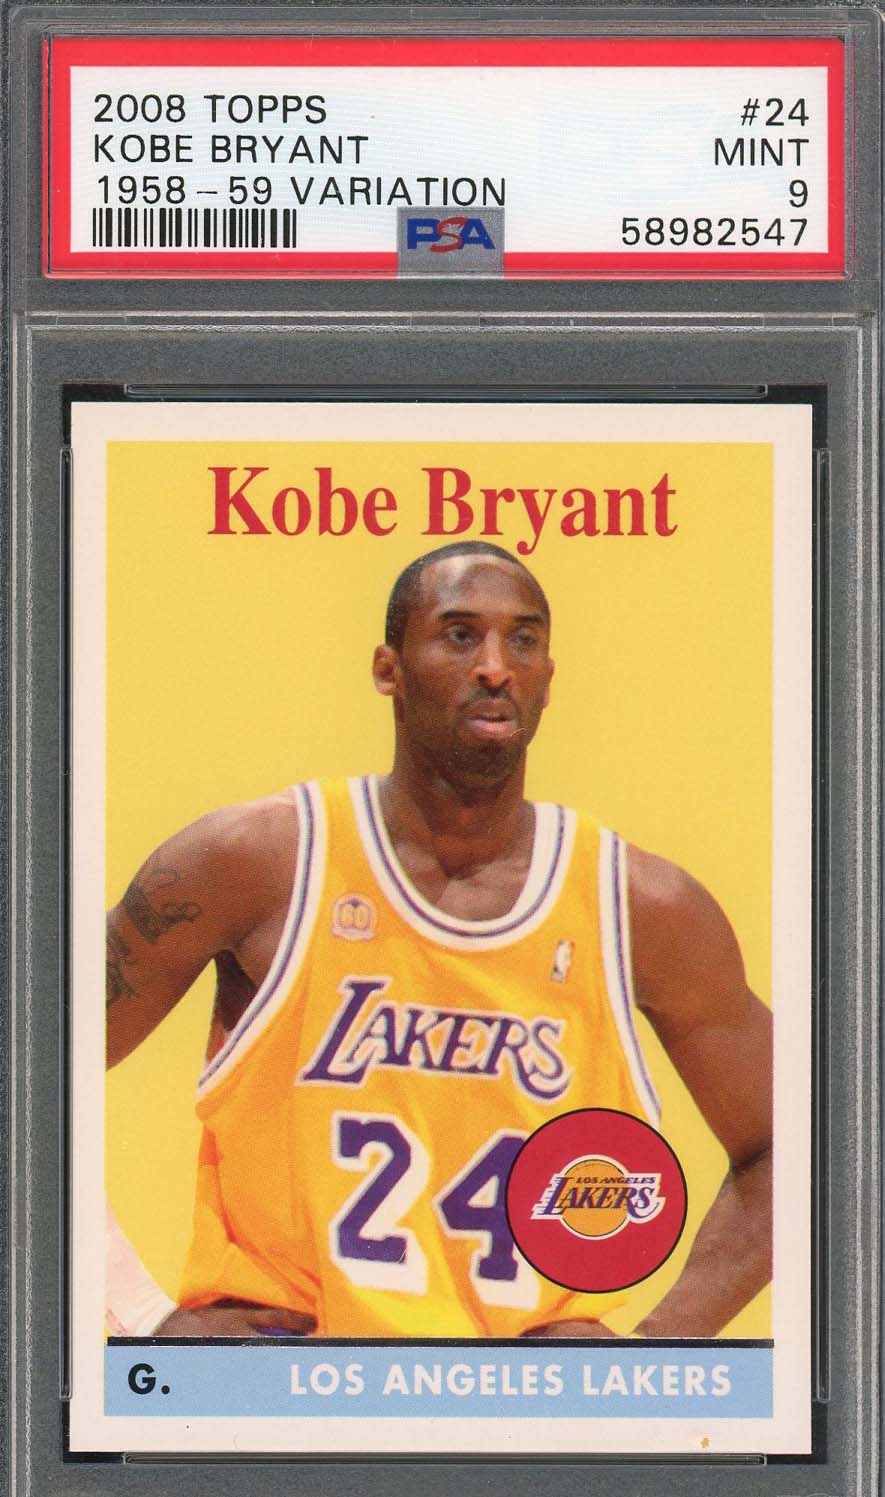 Kobe Bryant 2008 Topps Base #24 Price Guide - Sports Card Investor